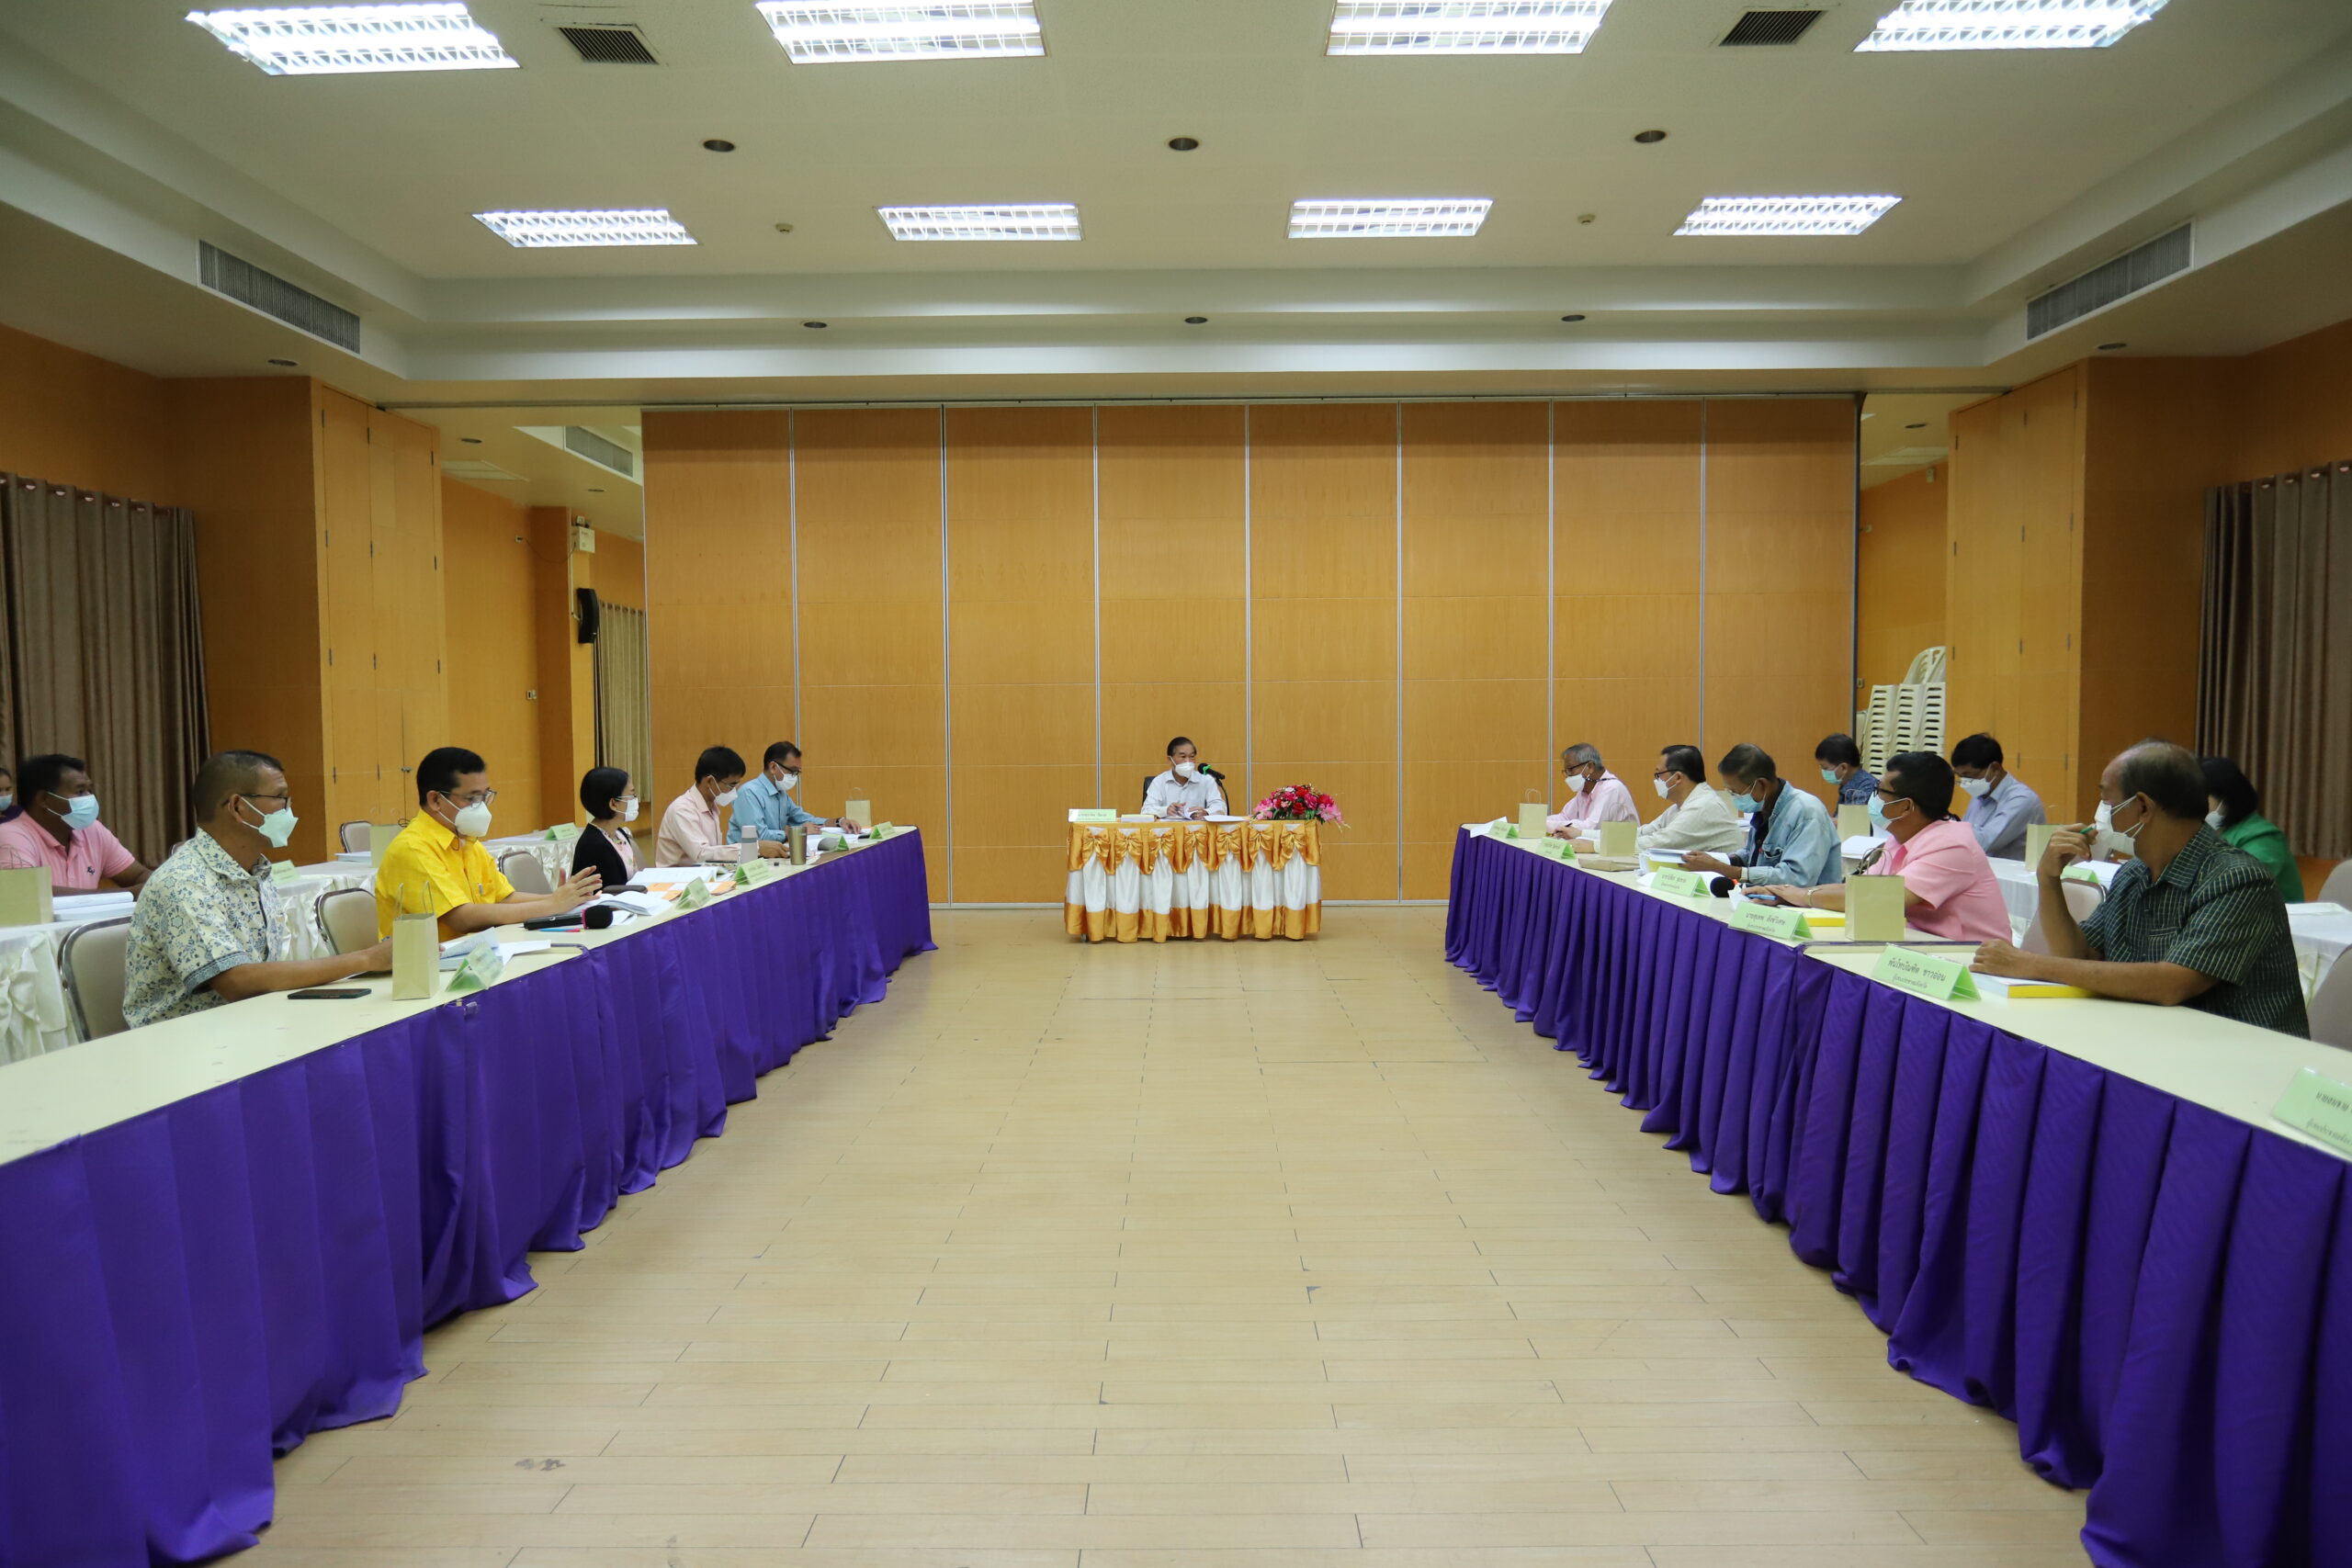 ประชุมคณะกรรมการพัฒนาองค์การบริหารส่วนจังหวัดอ่างทอง ครั้งที่ 3/2564